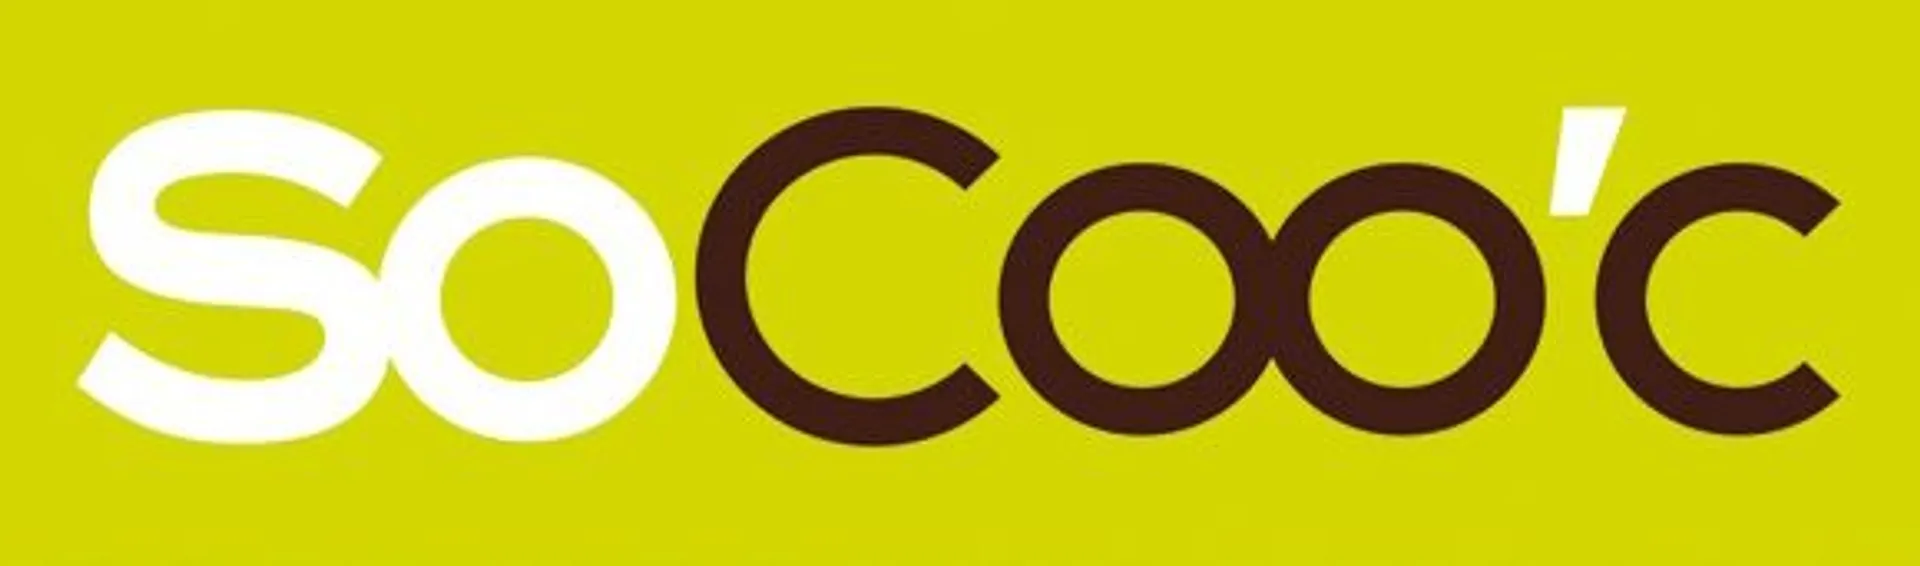 SOCOO'C logo